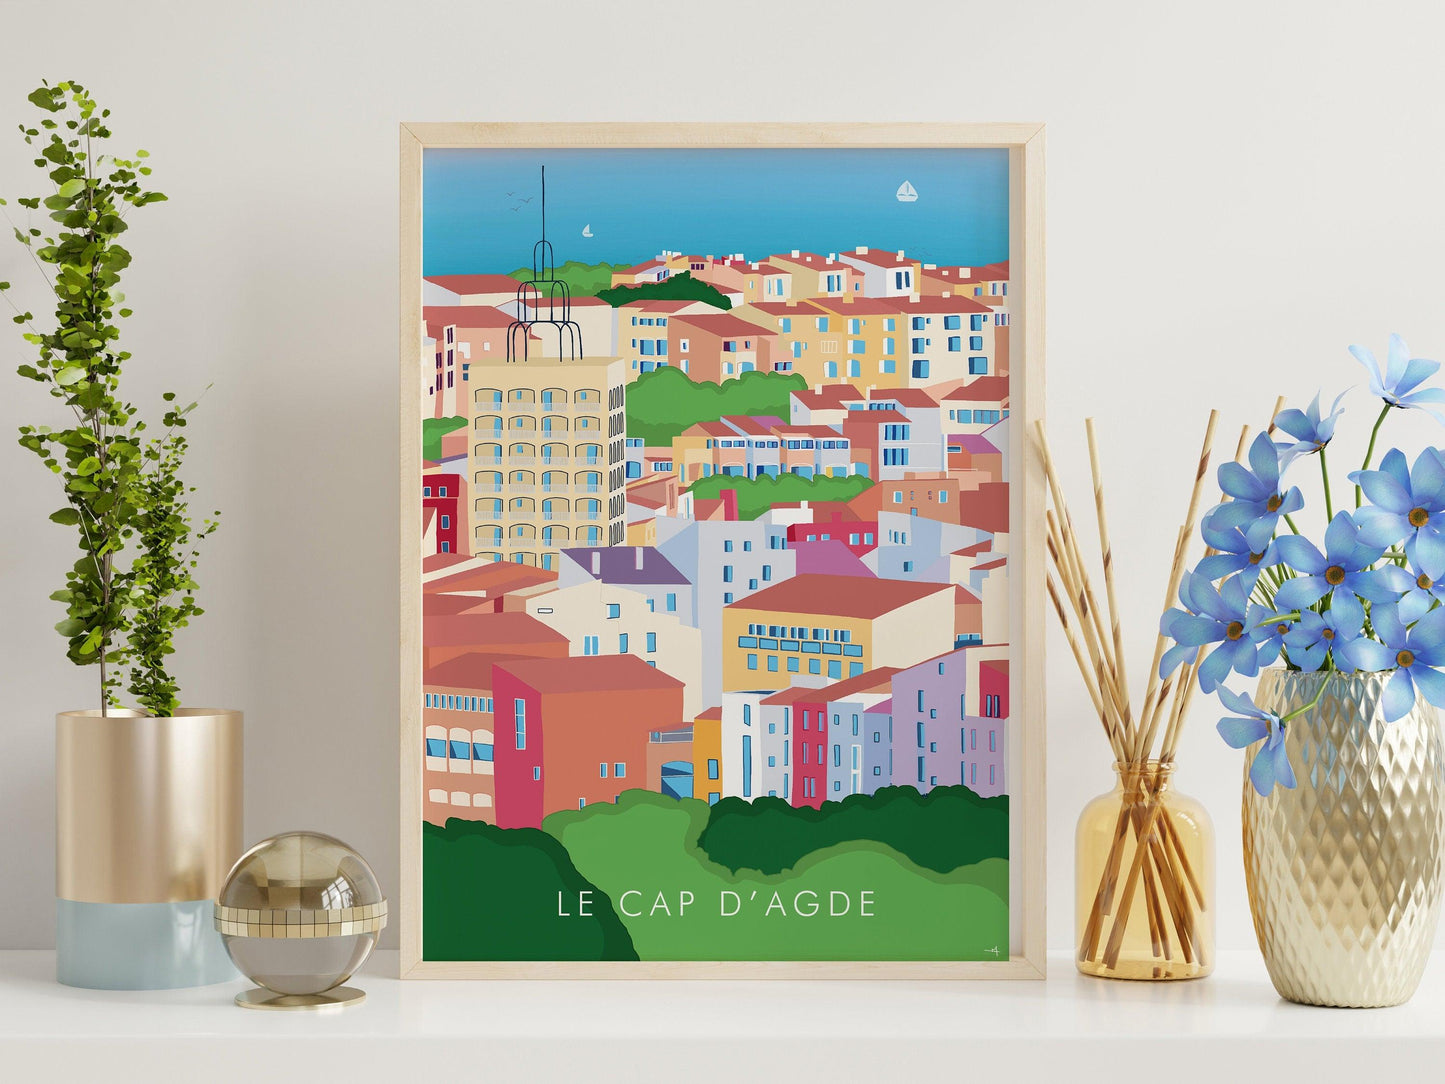 Cap d'agde - Hérault - France - vacances carte postale affiche - couleurs du sud - plage et soleil - méditerranée - souvenir cadeau été - Imagine.affiche